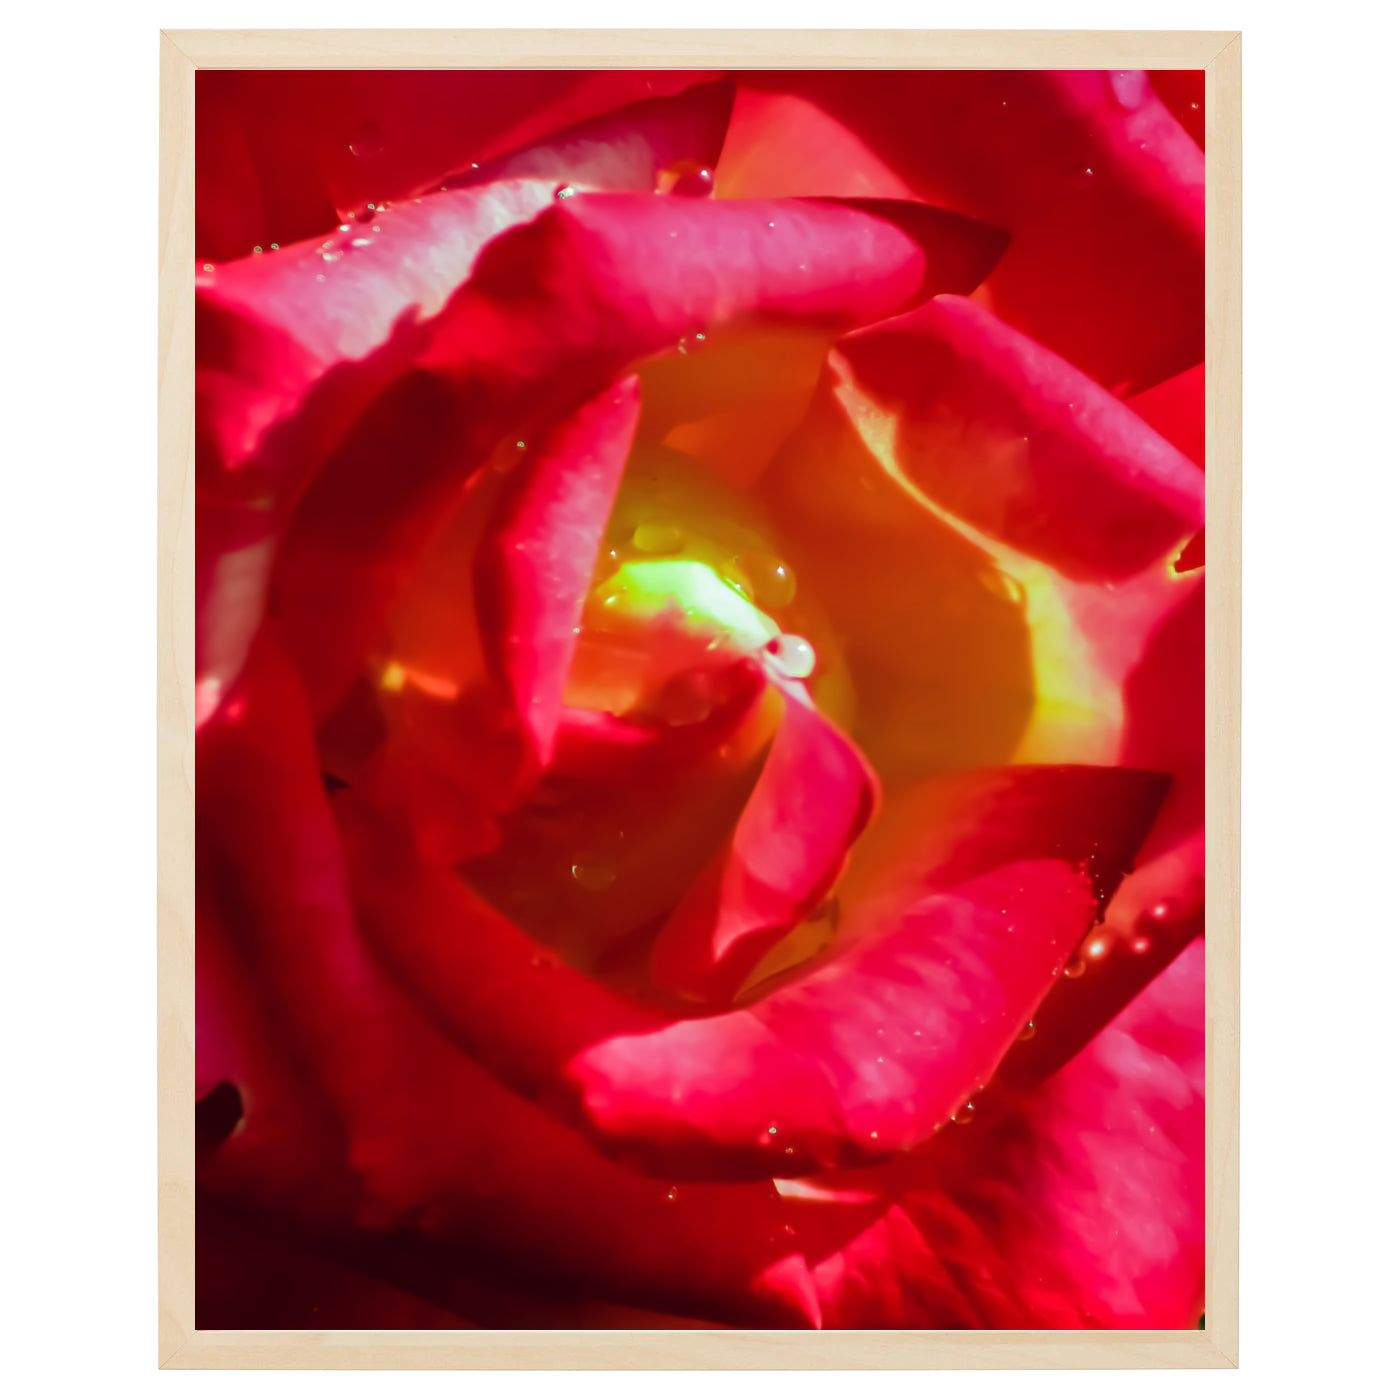 Close-up af en rød rose i fuldt flor. Kronbladene er tæt sammenpakket og bøjet indad, hvilket skaber en dramatisk effekt. Blomsten er fotograferet fra en lav vinkel og er centreret i billedet. De mørkegrønne blade på bagsiden af blomsten tilføjer en naturlig baggrund til blomsten. Et klassisk symbol på romantik og lidenskab.